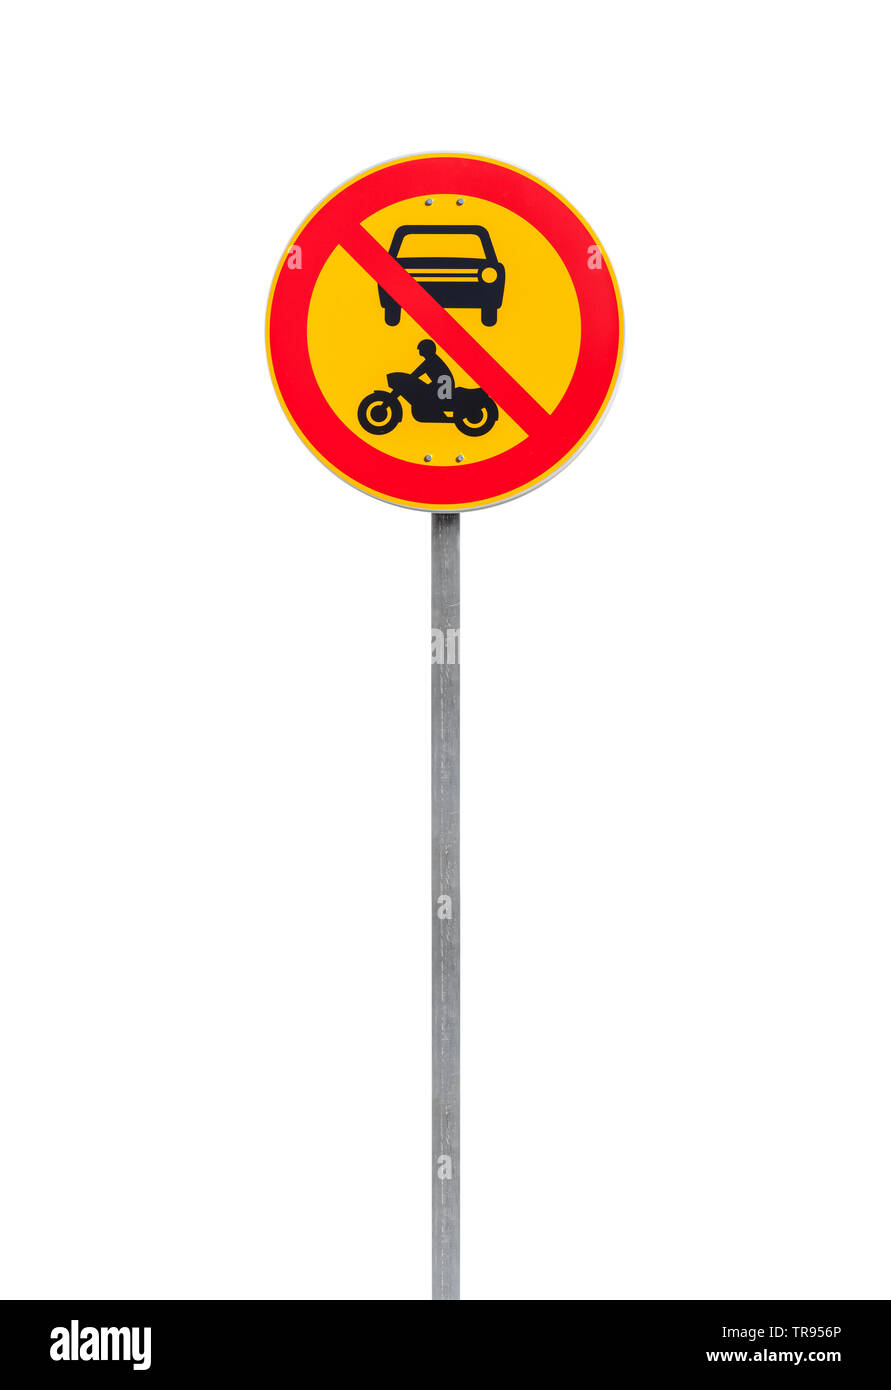 Passage des véhicules et motos est interdite. Panneau de circulation ronde européenne sur poteau de métal isolé sur fond blanc Banque D'Images